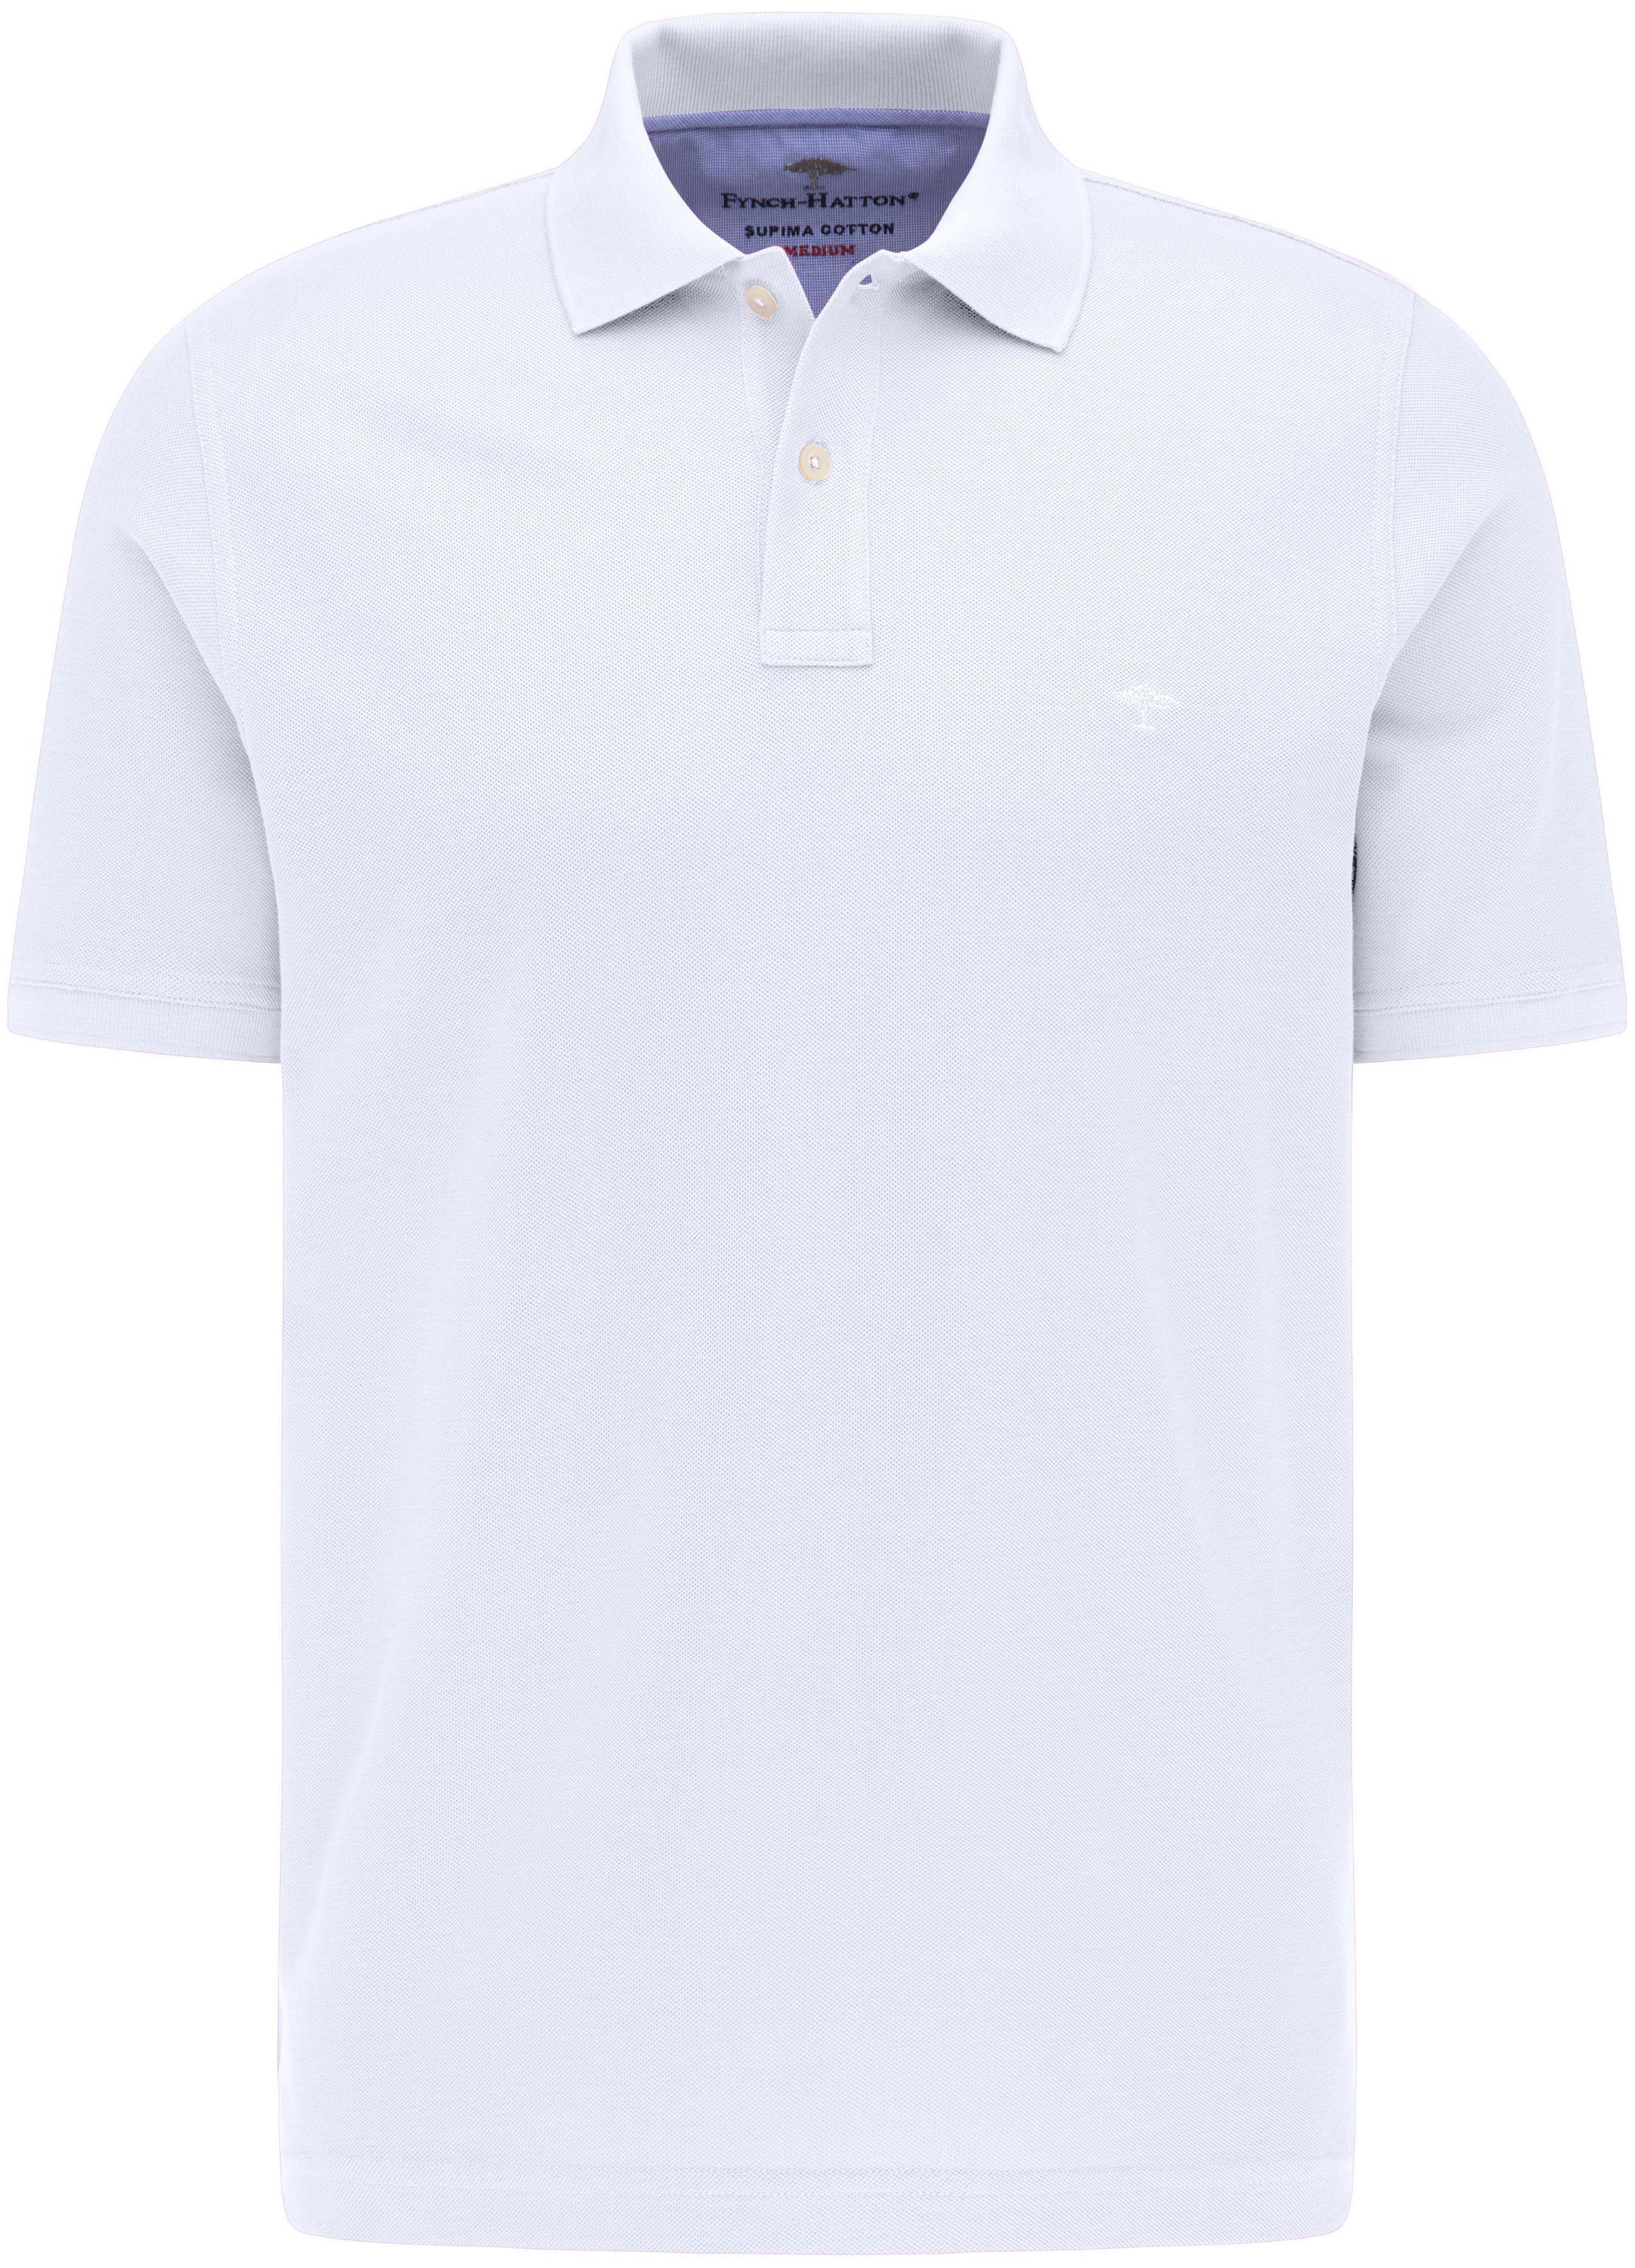 FYNCH-HATTON Poloshirt FYNCH-HATTON Kurzarm Poloshirt (1-tlg) mit kleinem Markenlogo weiß